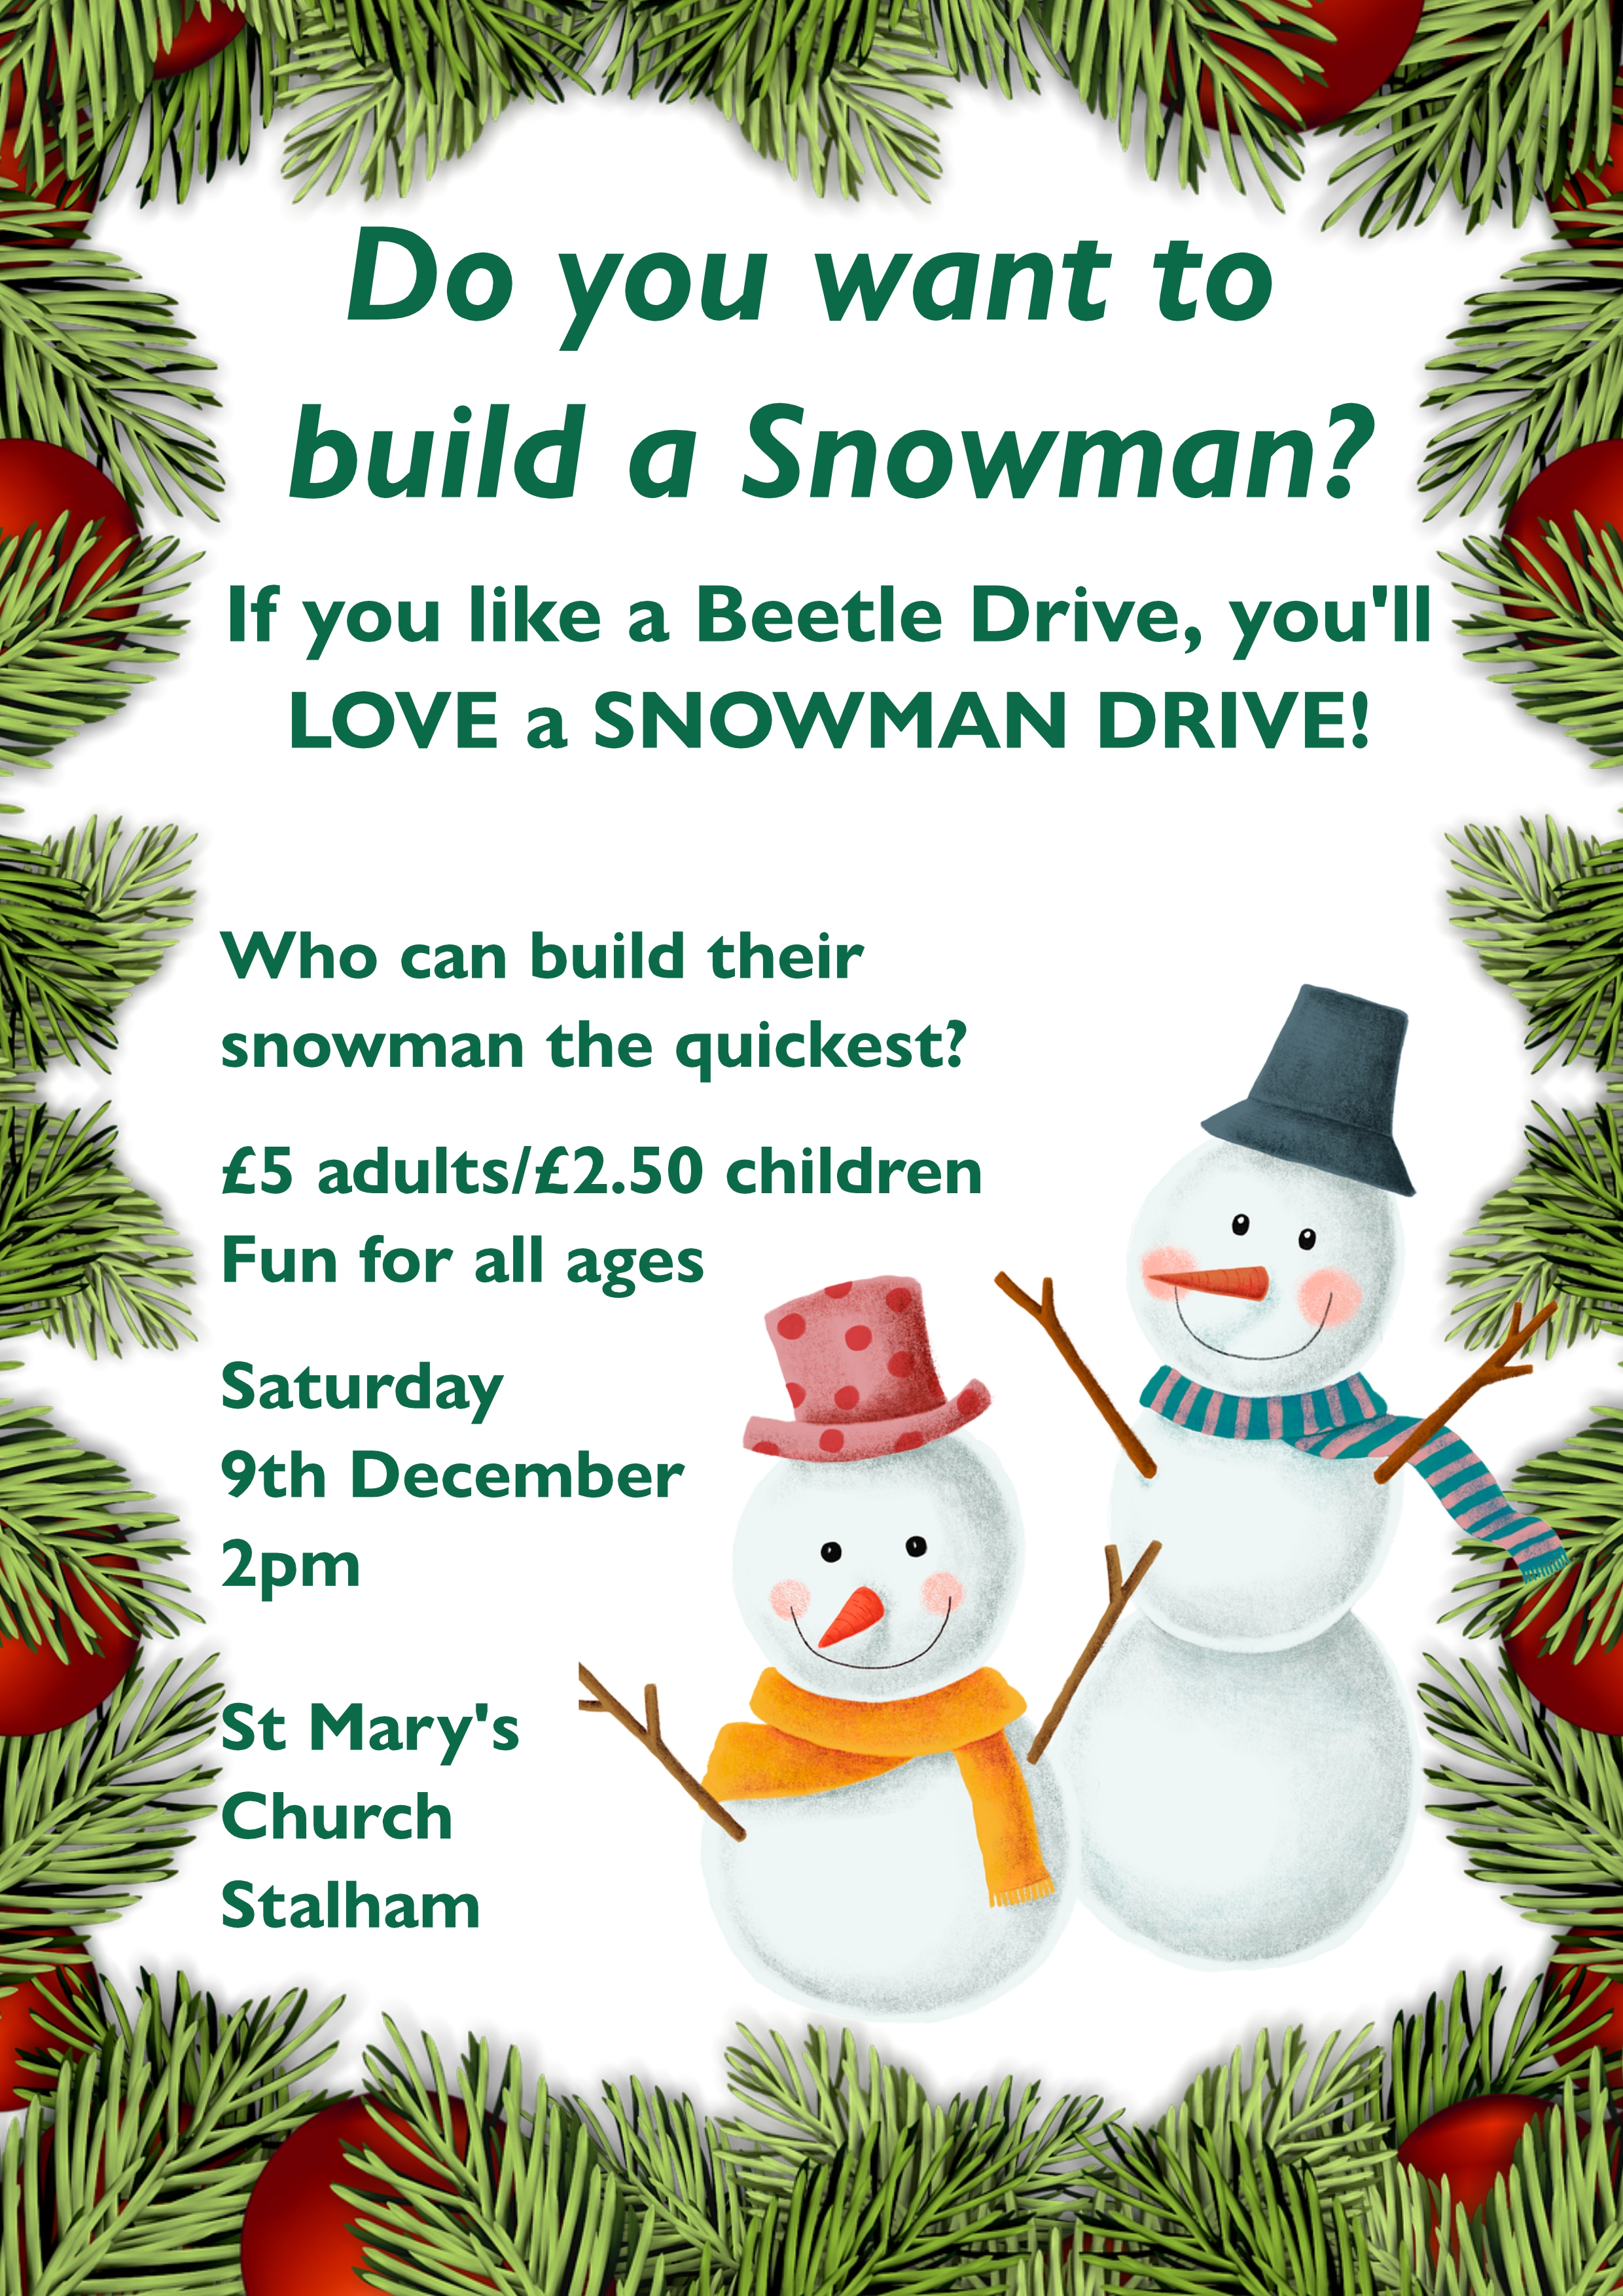 Build a snowman - 9th Dec 2pm. £5 adults, £2.50 children